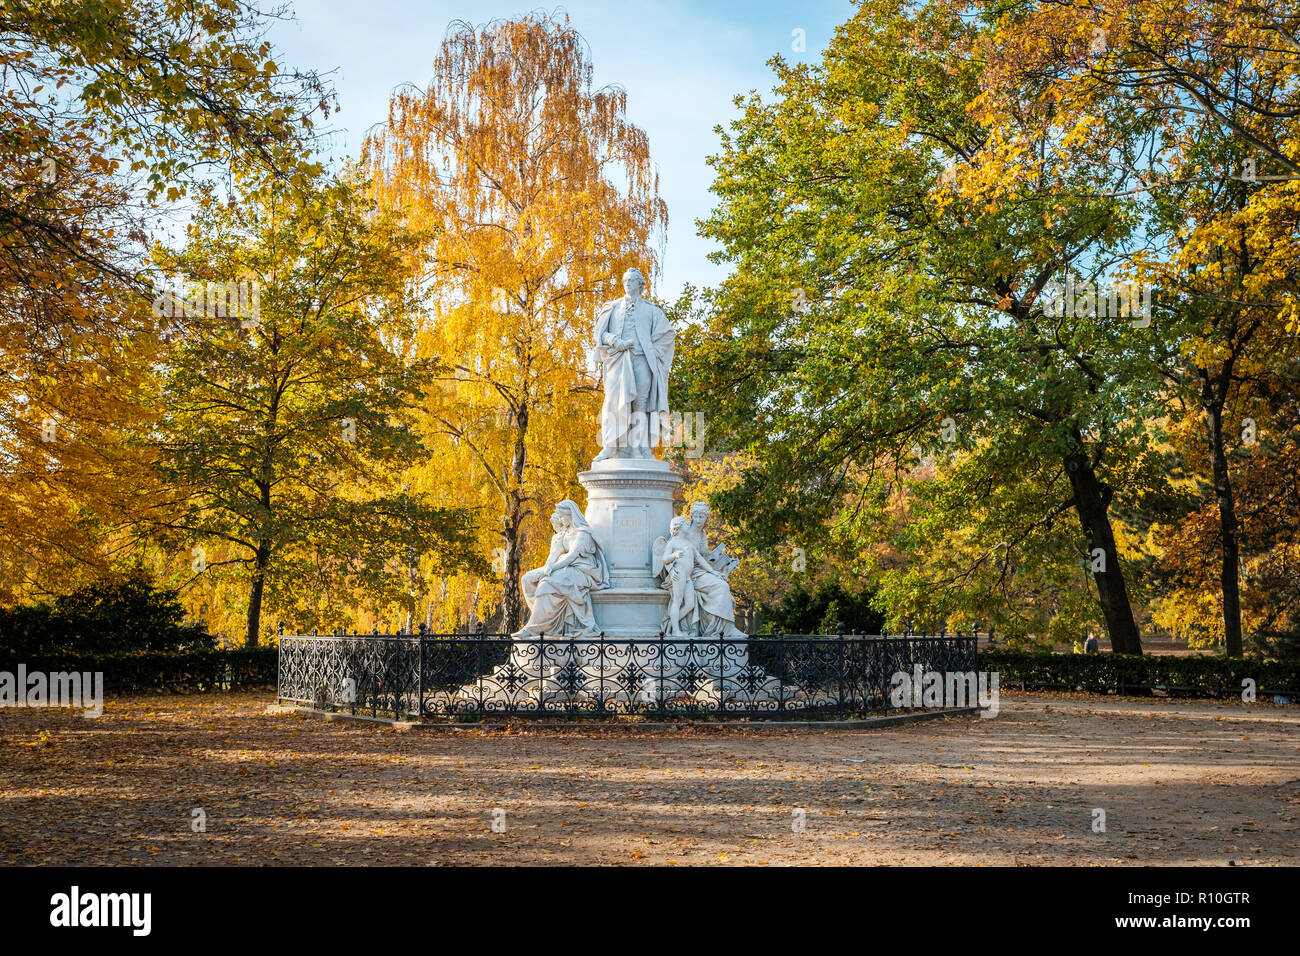 Berlín, Alemania - noviembre 2018: estatua del famoso poeta Johann Wolfgang von Goethe en un parque cerca de la puerta de Brandenburgo. Berlín, Alemania Foto de stock